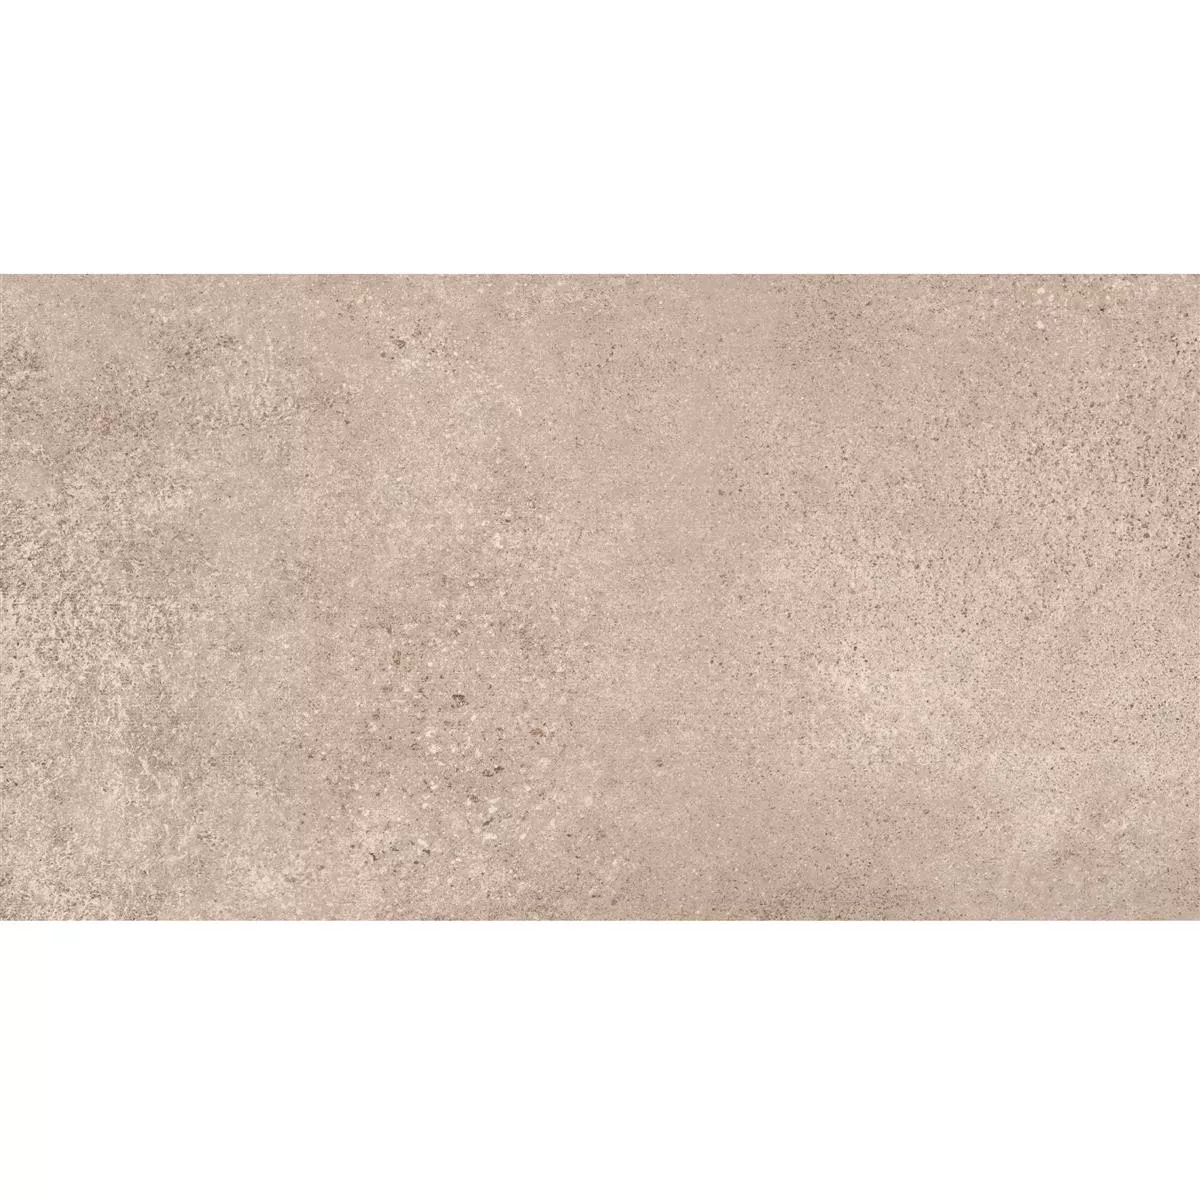 Πρότυπο από Πλακάκια Δαπέδου Πέτρινη Όψη Riad Παγωμένος R9 Ανοιχτό Kαφέ 30x60cm 